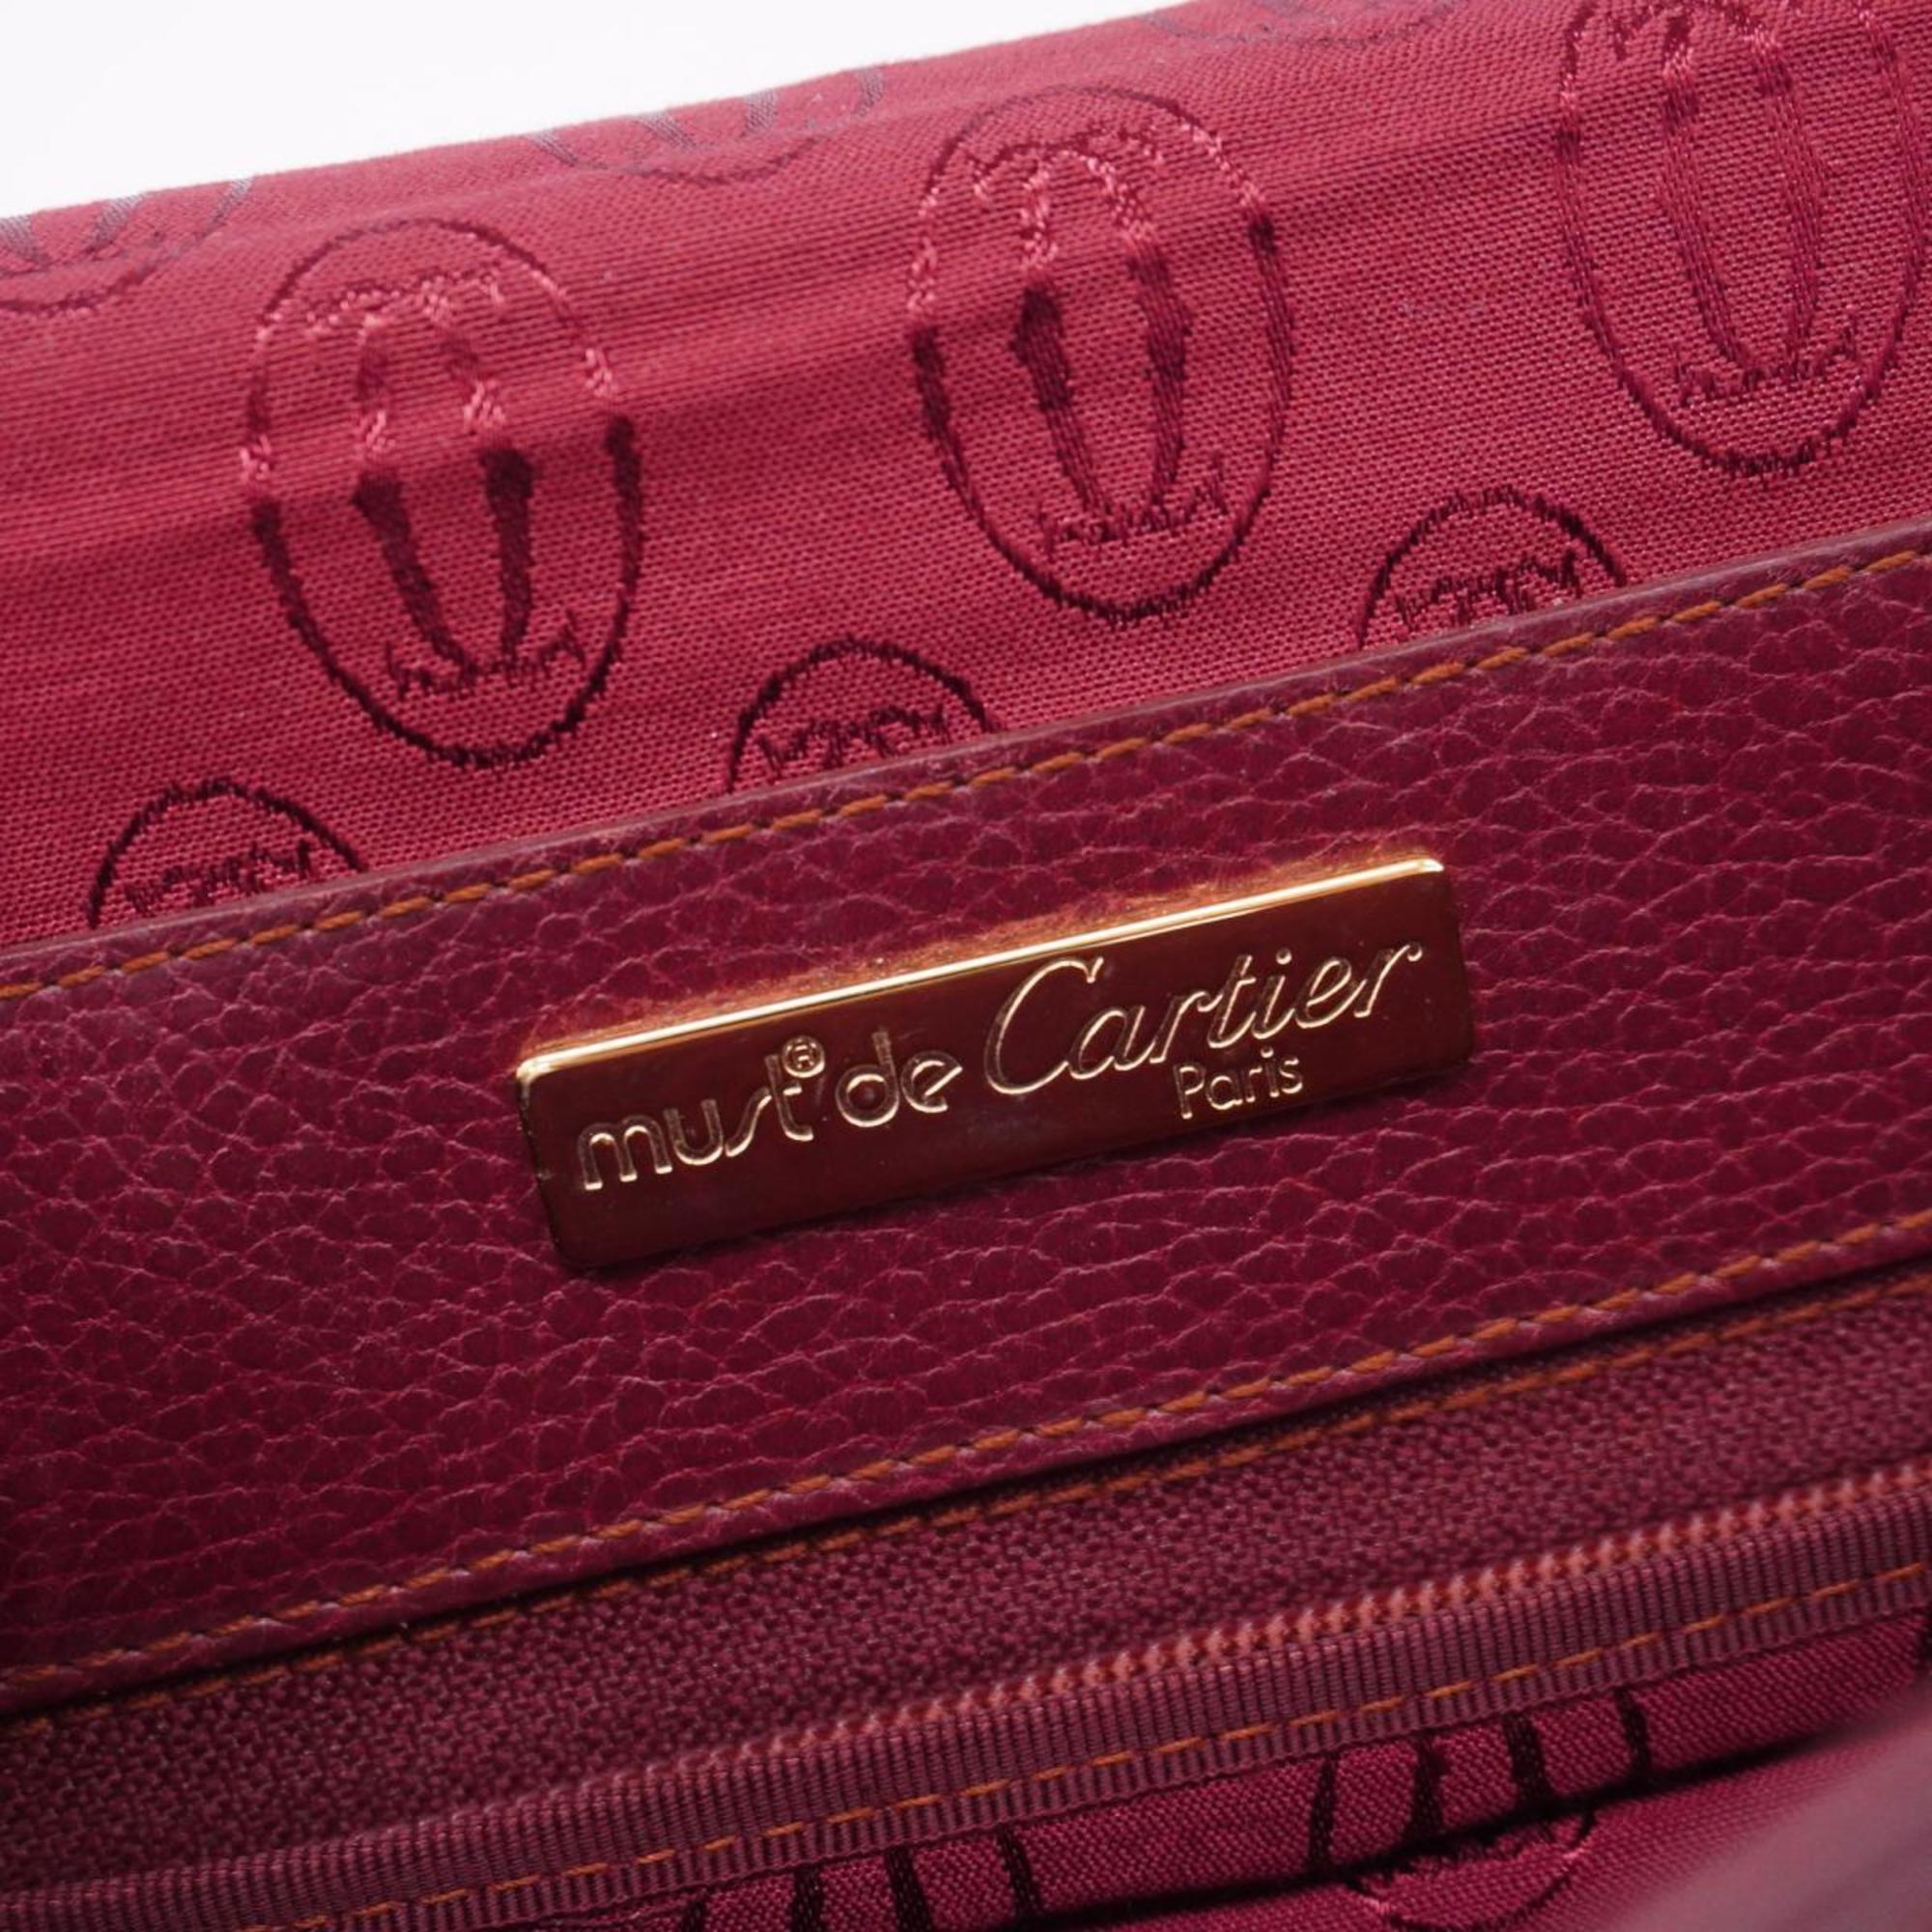 Cartier shoulder bag Trinity leather Bordeaux pink ladies